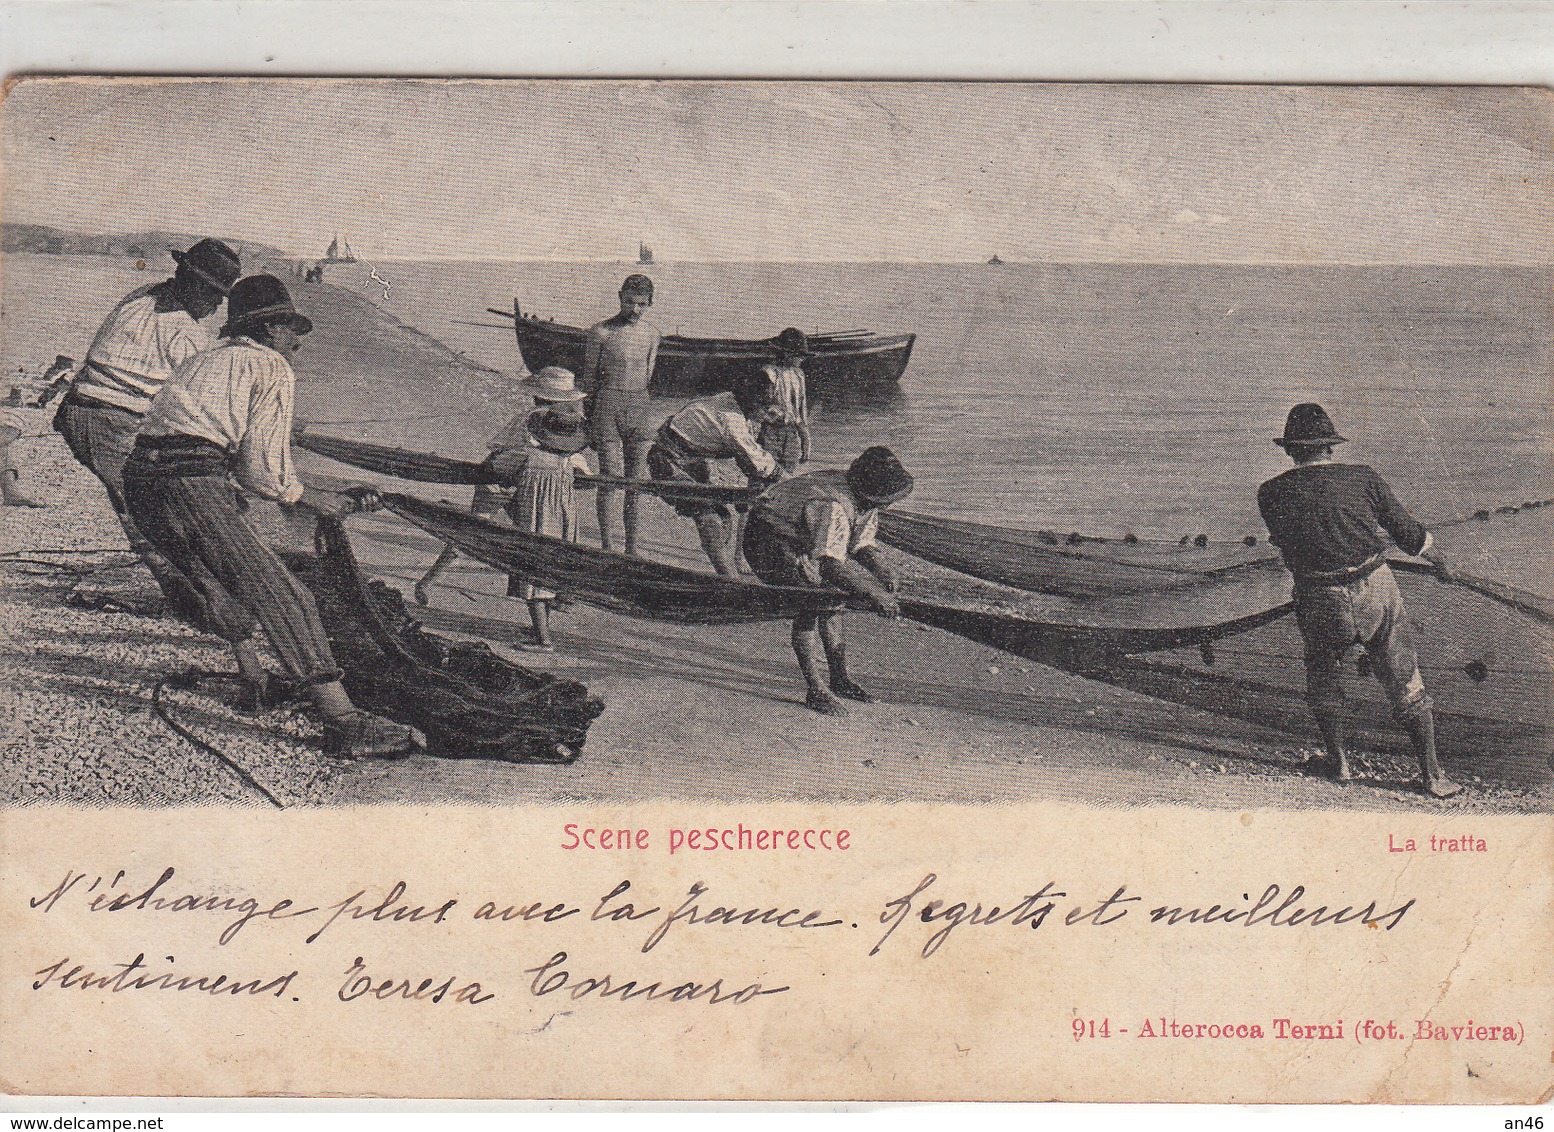 Scene Di Pesca_pescherecce_" La Tratta " Vg Il 1902 X Paris-Buono Statato Di Conservazione-Originale 100%- - Fischerei